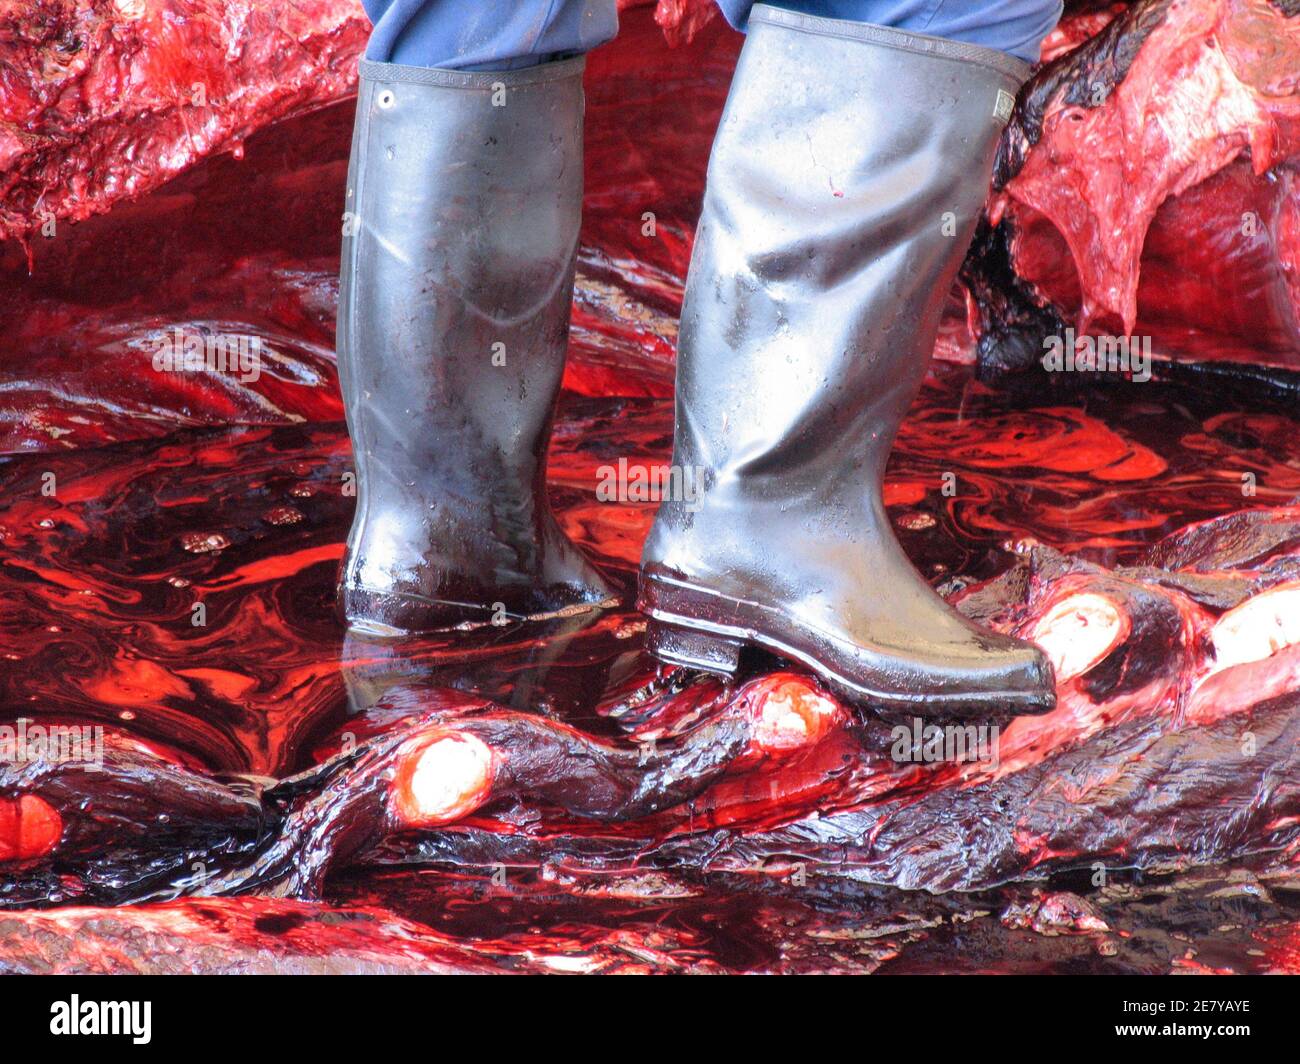 Les travailleurs boucheraient une baleine à bec de Baird de 10 tonnes (11 tonnes) au port de l'AMA dans la préfecture de Chiba, au Japon le 21 juin 2007. Le Japon a menacé de quitter la Commission baleinière internationale (CBI) le mois dernier, après que l'opposition des nations anti-baleinière à la réunion annuelle du groupe l'a forcé à abandonner une proposition permettant à quatre villages côtiers de tuer des petits rorquals. REUTERS/Olivier Fabre (JAPON) Banque D'Images